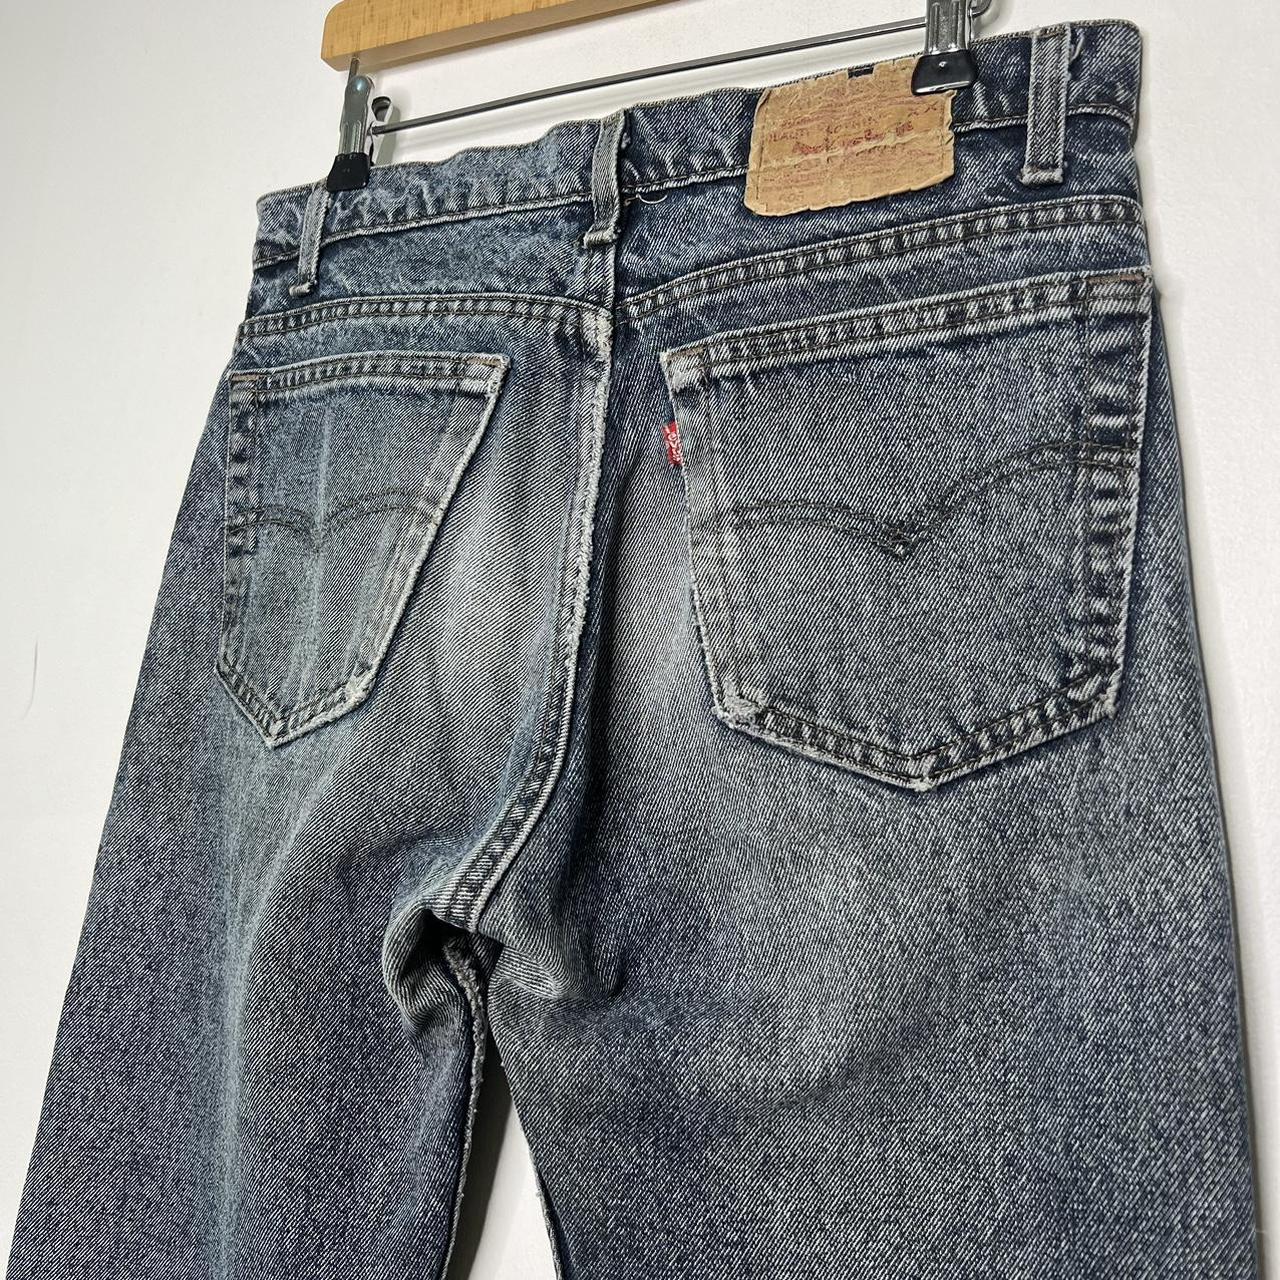 Vintage 90s Levi’s 505 denim jeans Made in USA 🇺🇸... - Depop